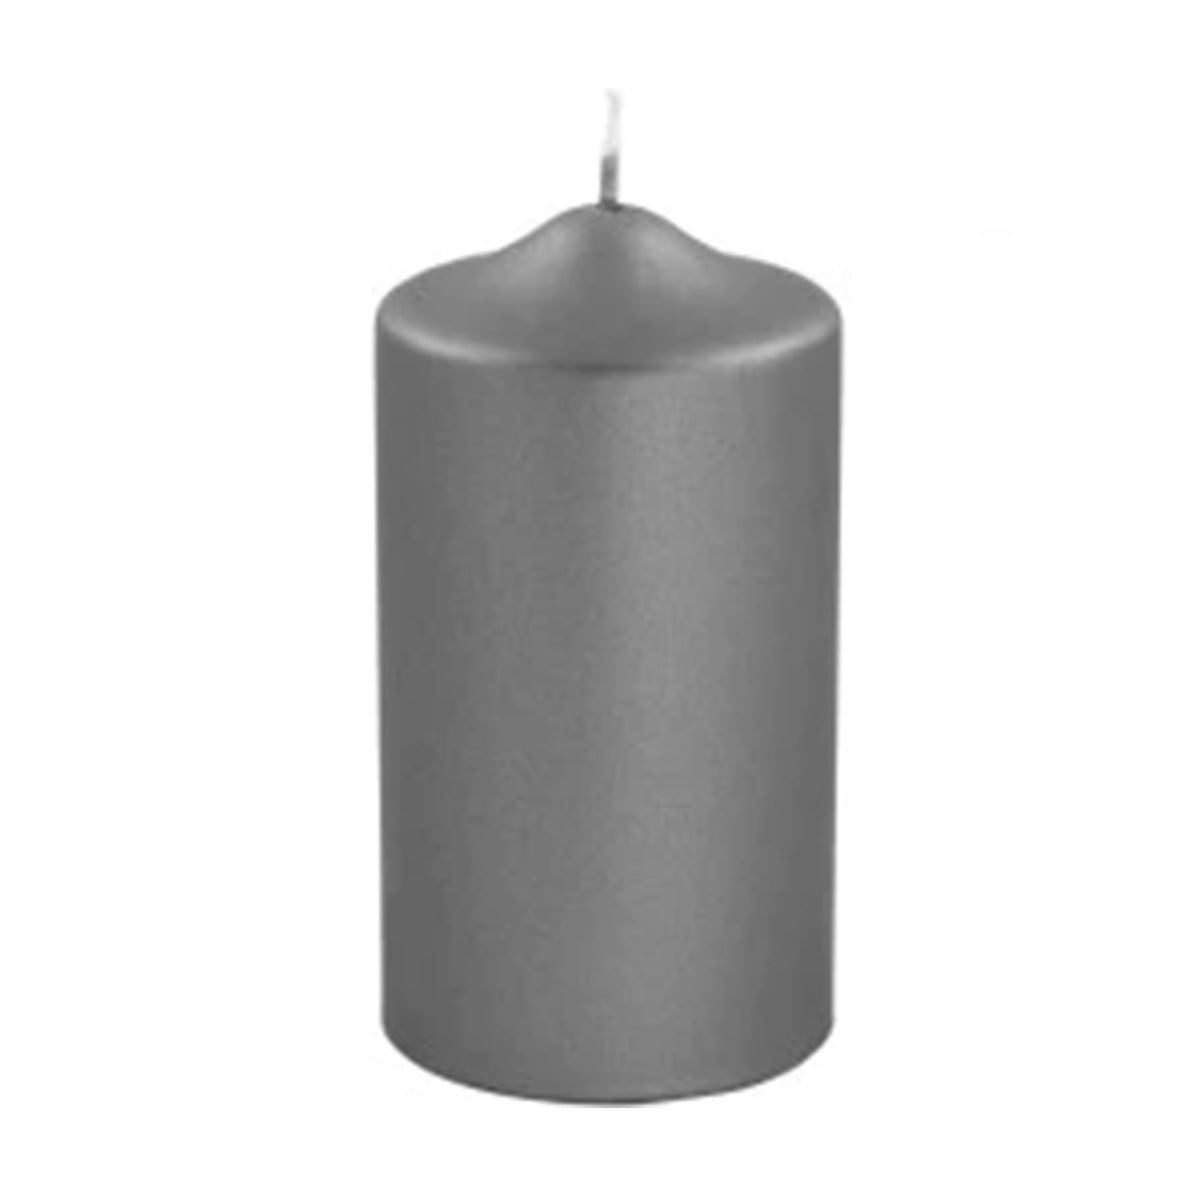 Graue metallische Kerze 15 cm